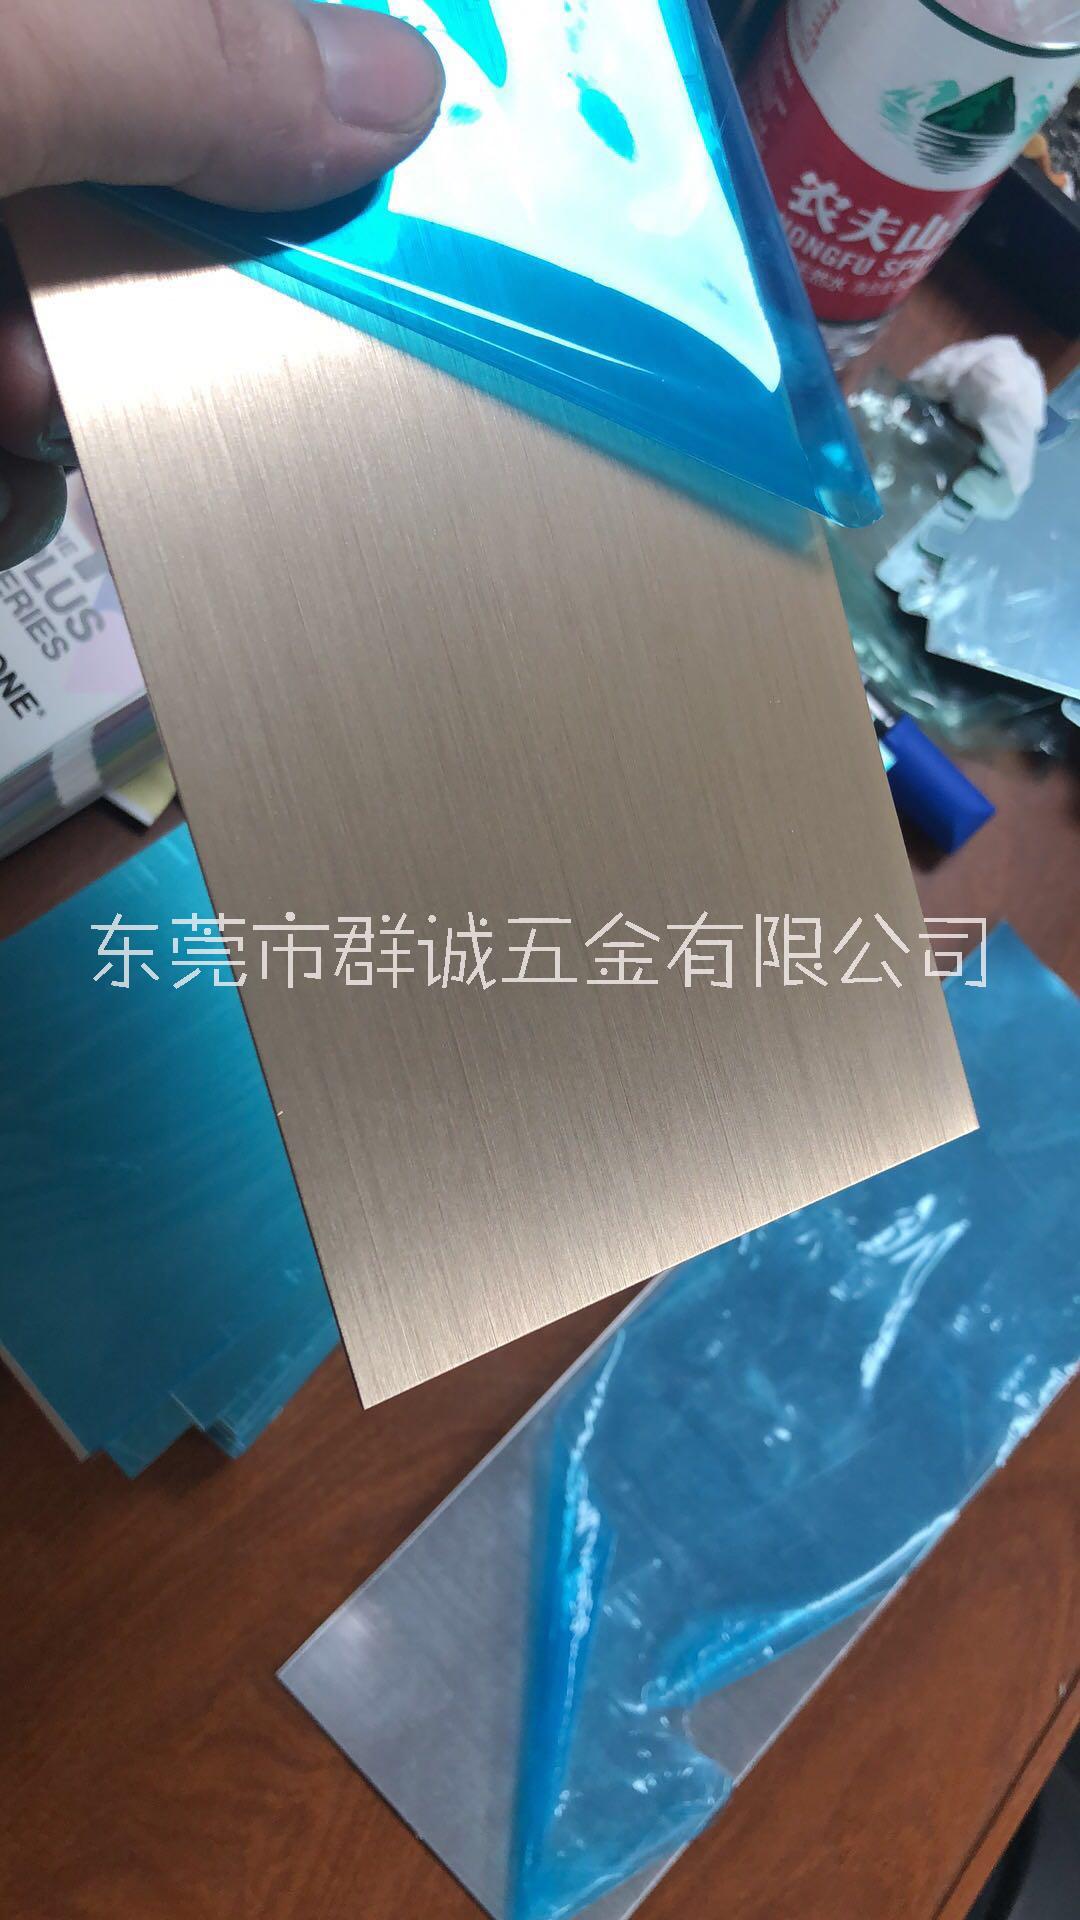 珠三角阳极氧化铝板厂家直销供应商批发报价-阳极氧化铝板质量哪家好图片